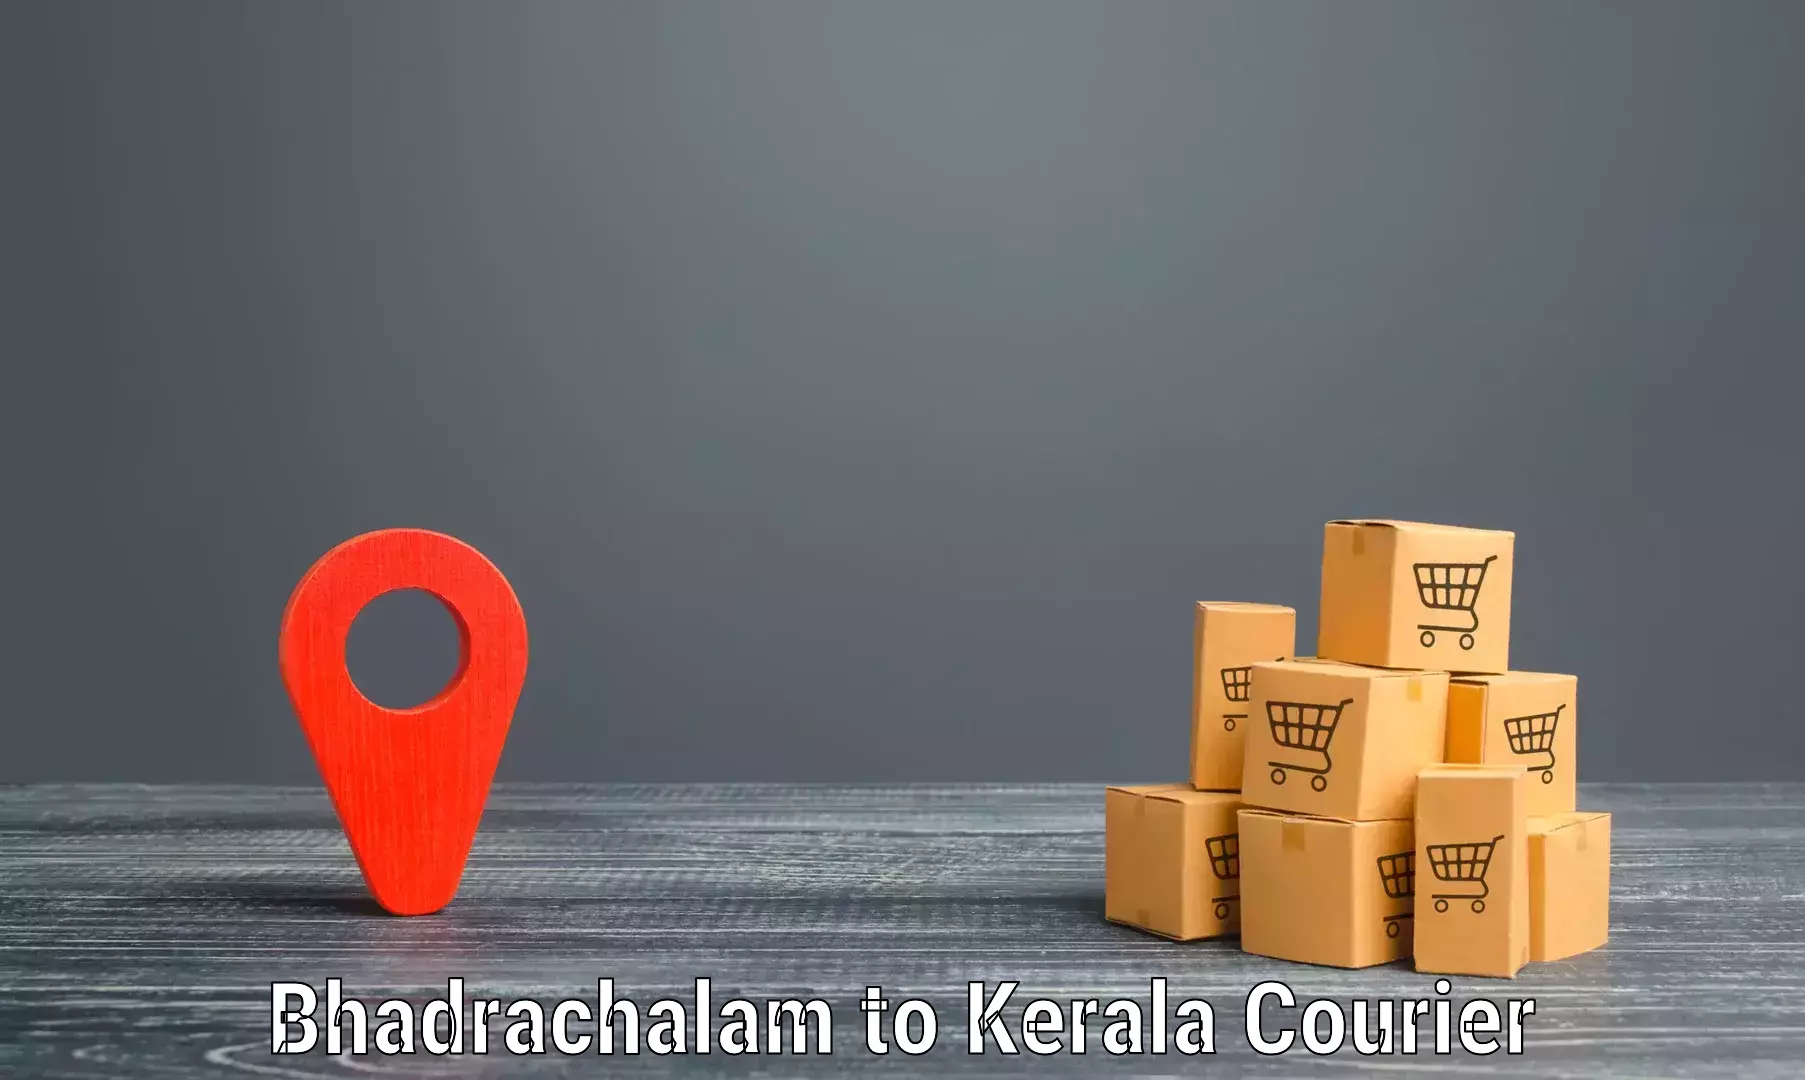 Premium courier solutions Bhadrachalam to Kumily